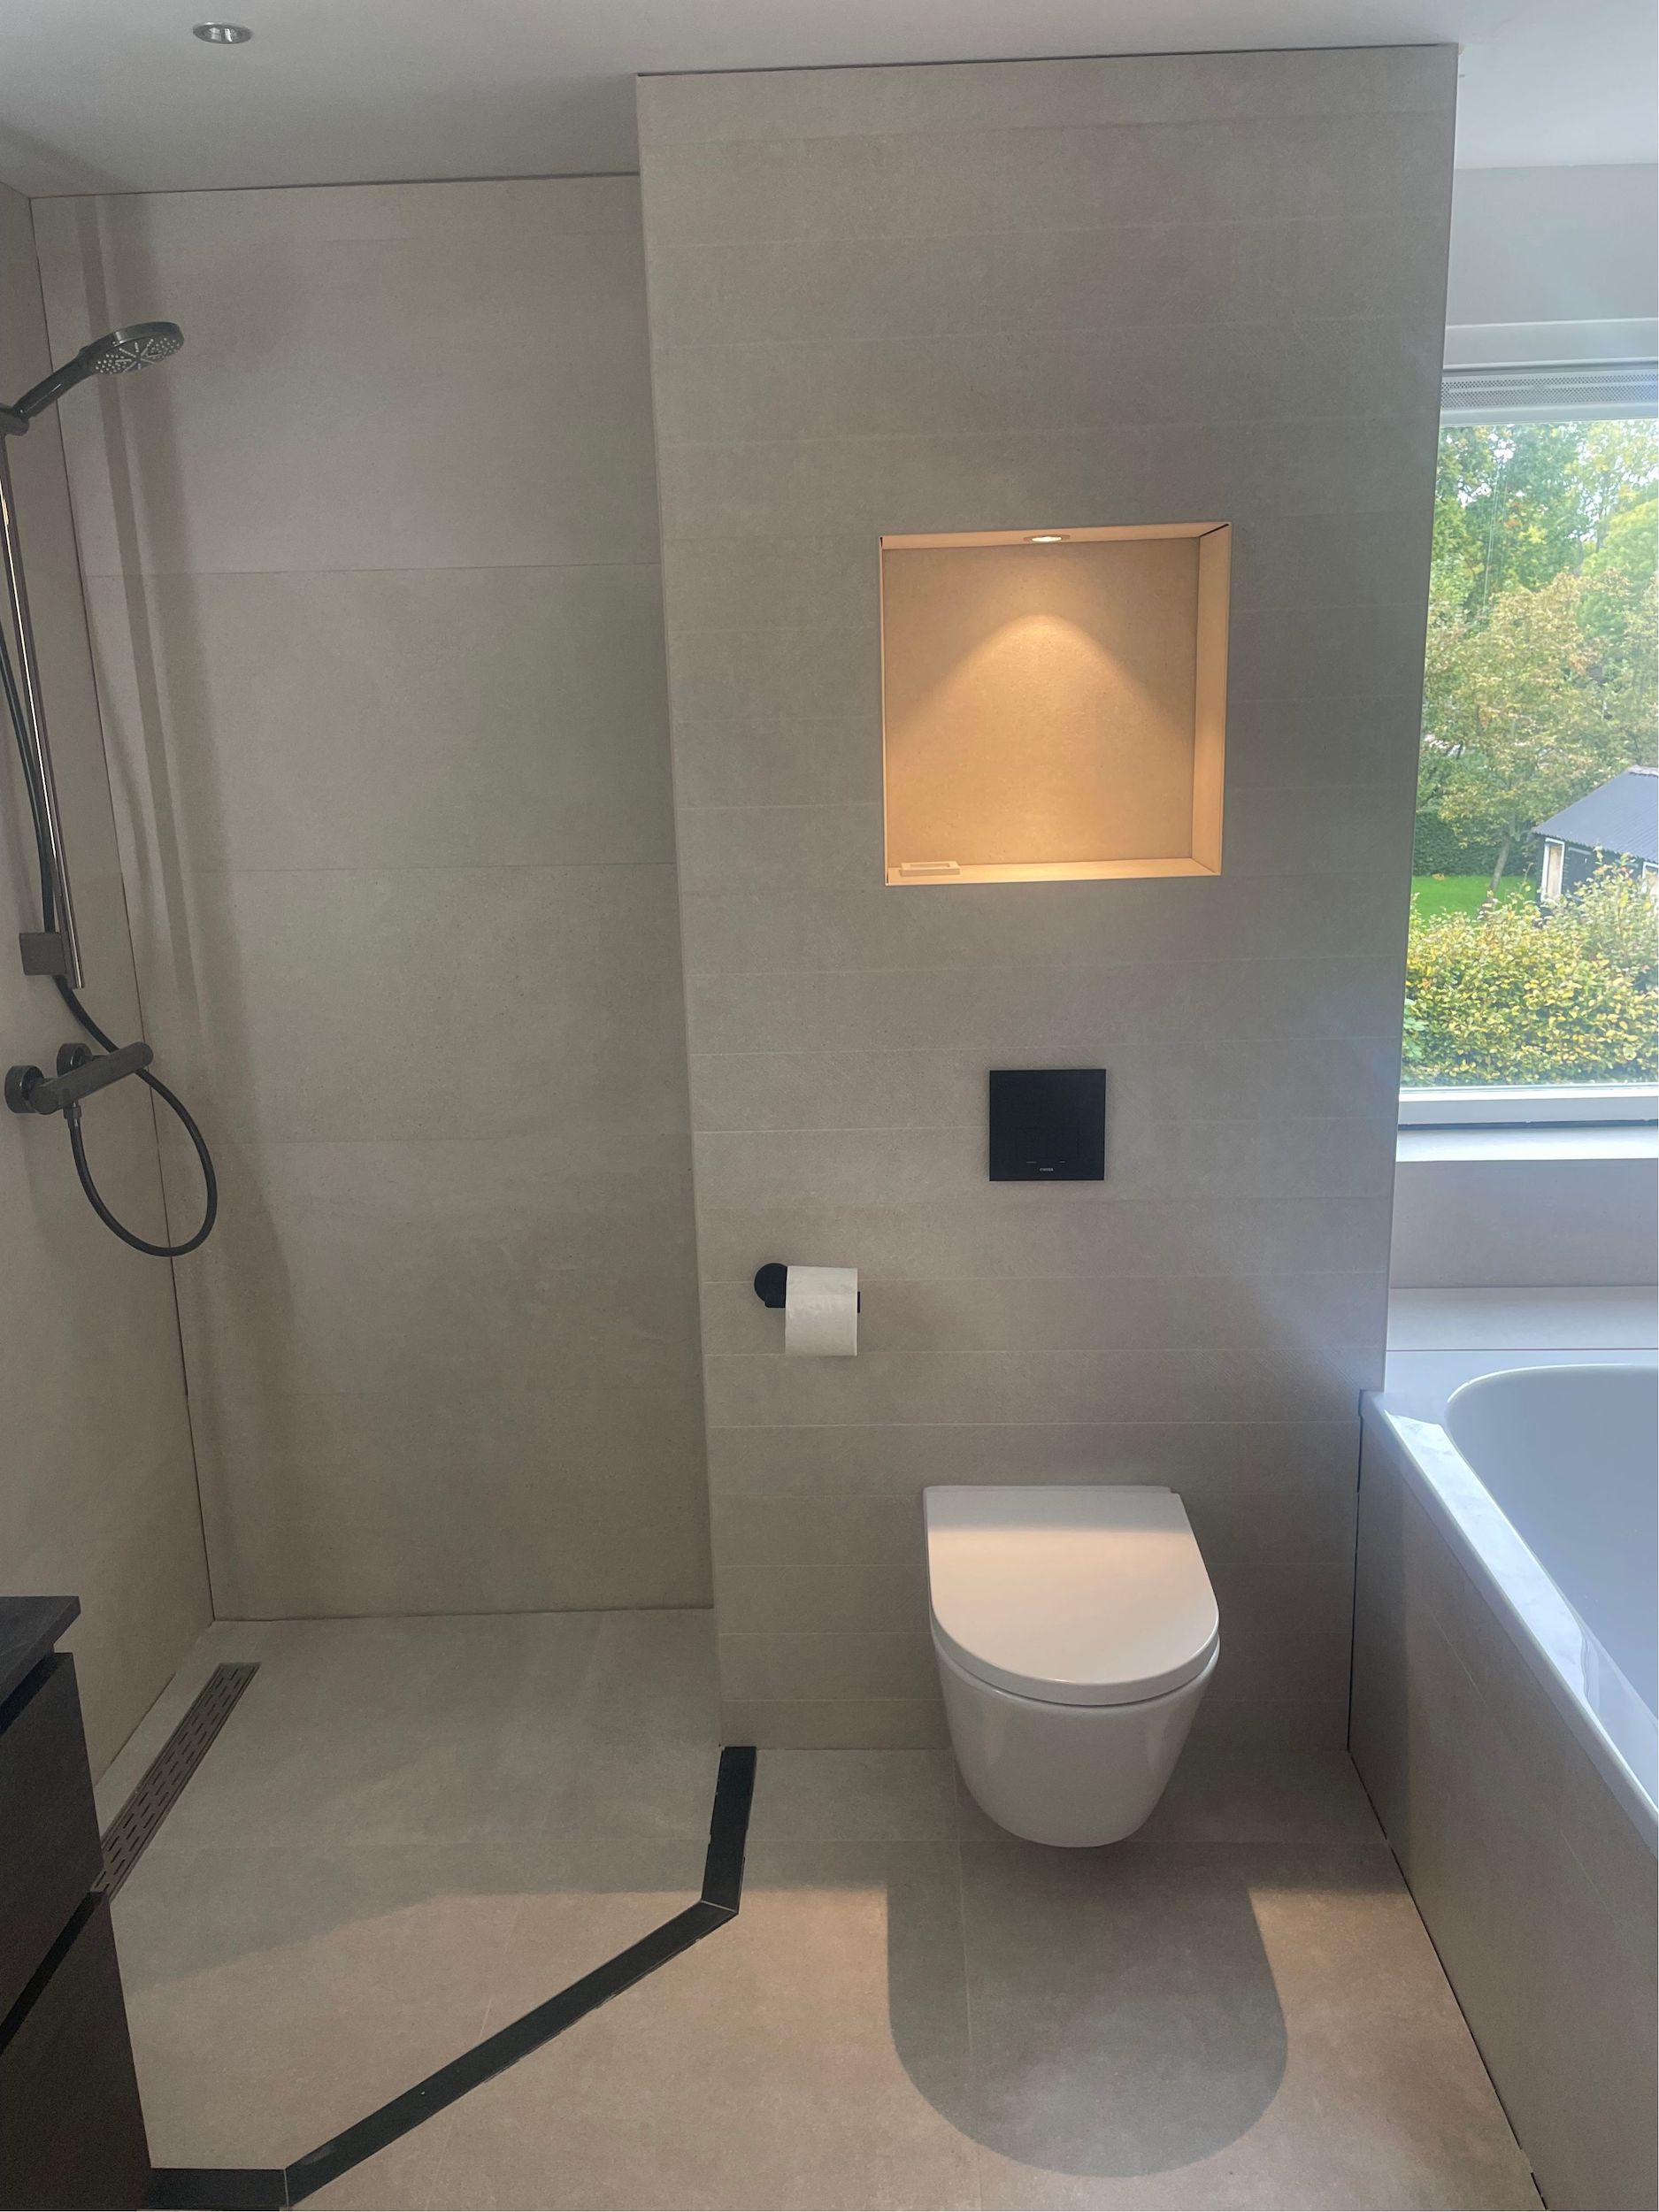 Bizot Installatietechniek – Project badkamer verbouwing 2022